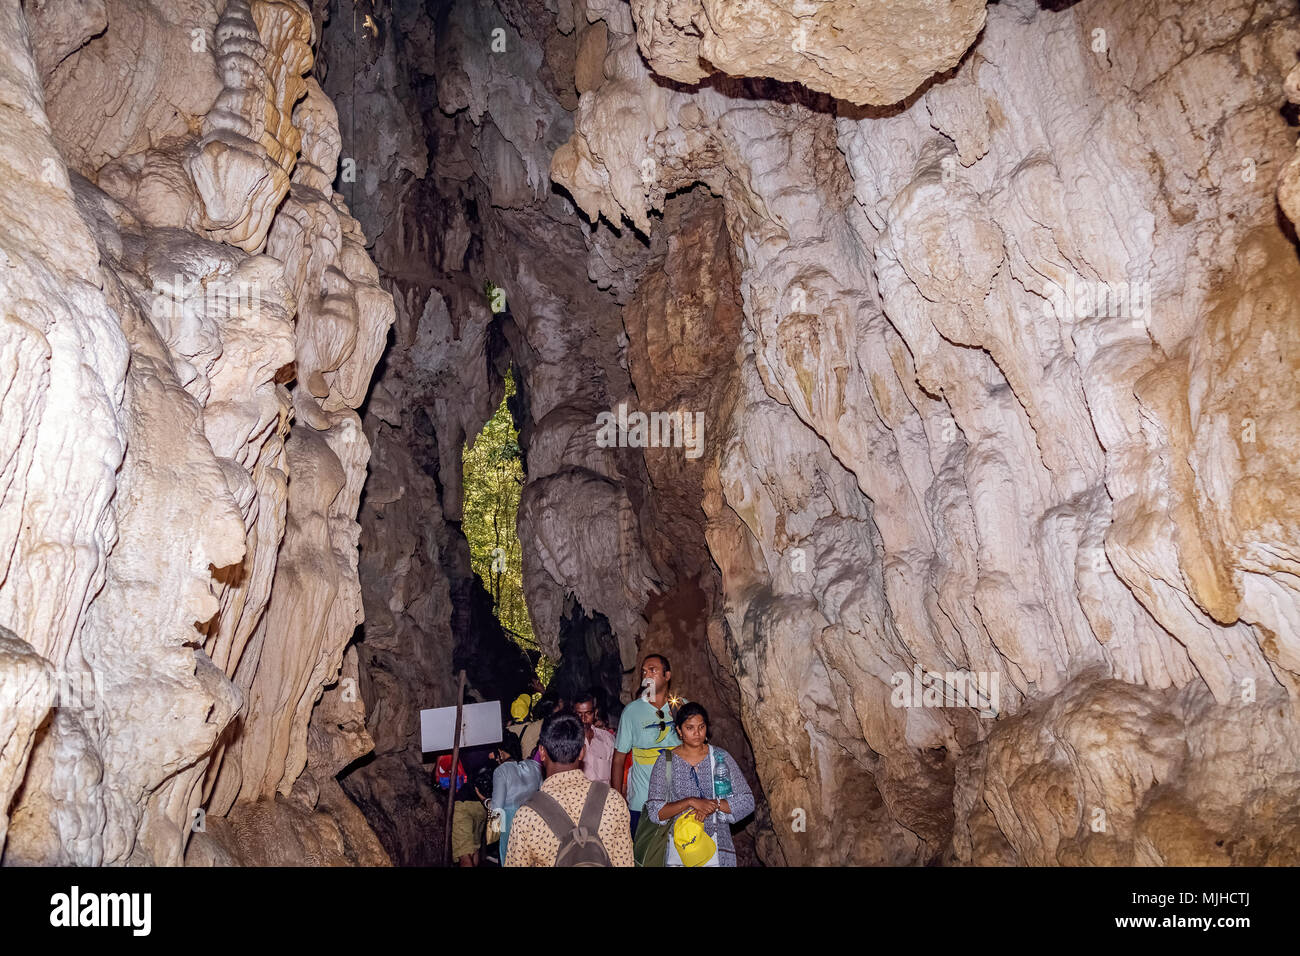 Limestone cave natural rock formations close up view at Baratang island, Andaman India. Stock Photo